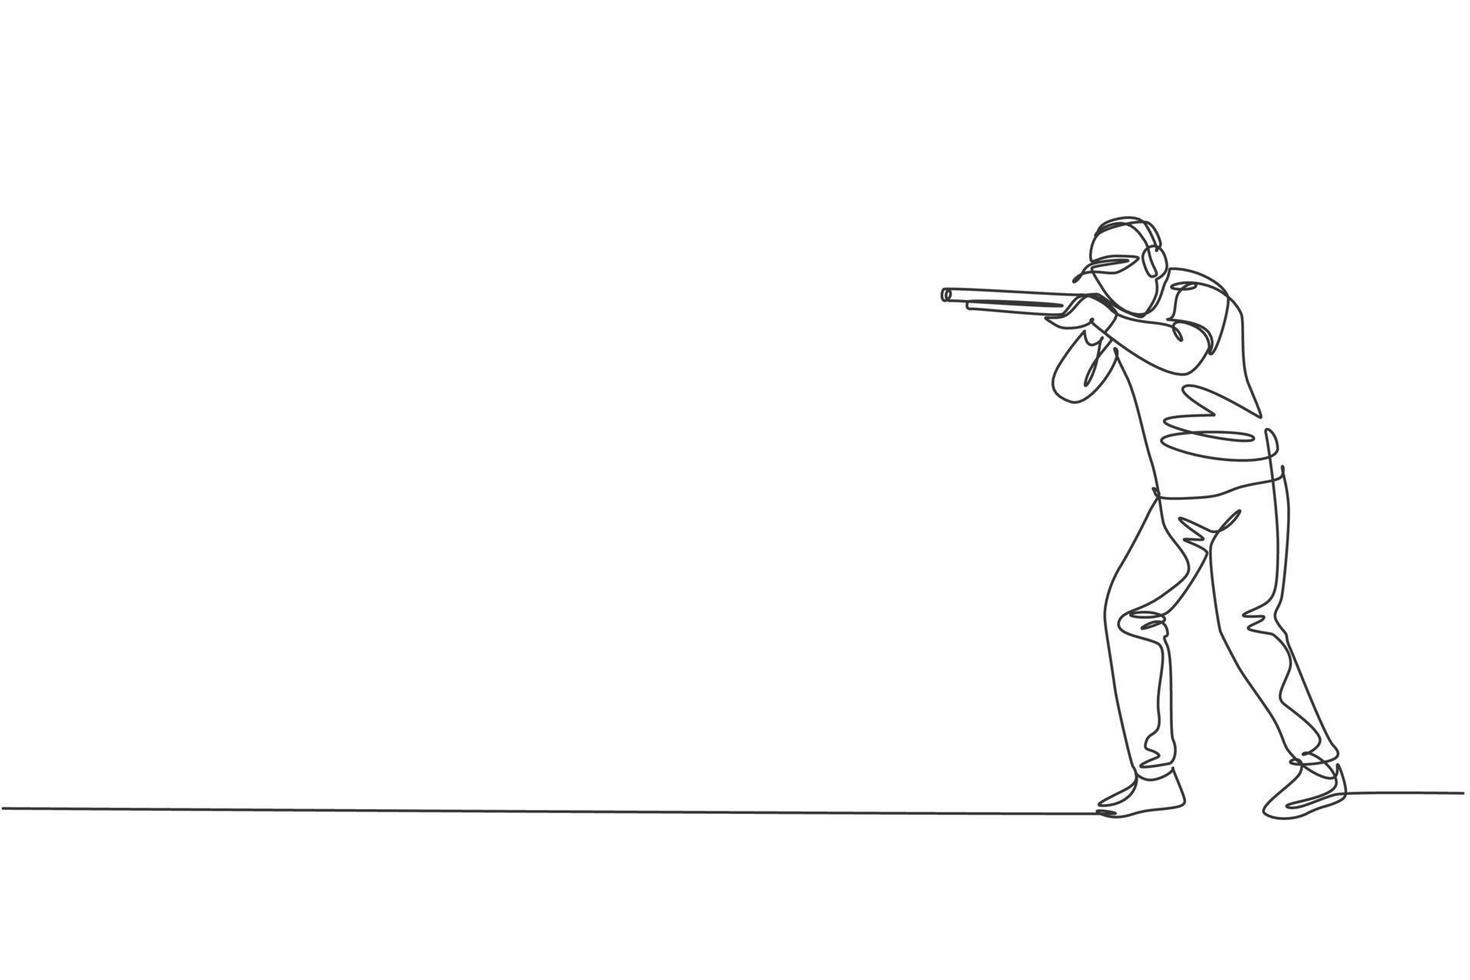 een doorlopende lijntekening van een jonge man op het schieten van oefenterreinen voor competitie met geweergeweer. buiten schieten sport concept. dynamische enkele lijn tekenen ontwerp vectorillustratie vector